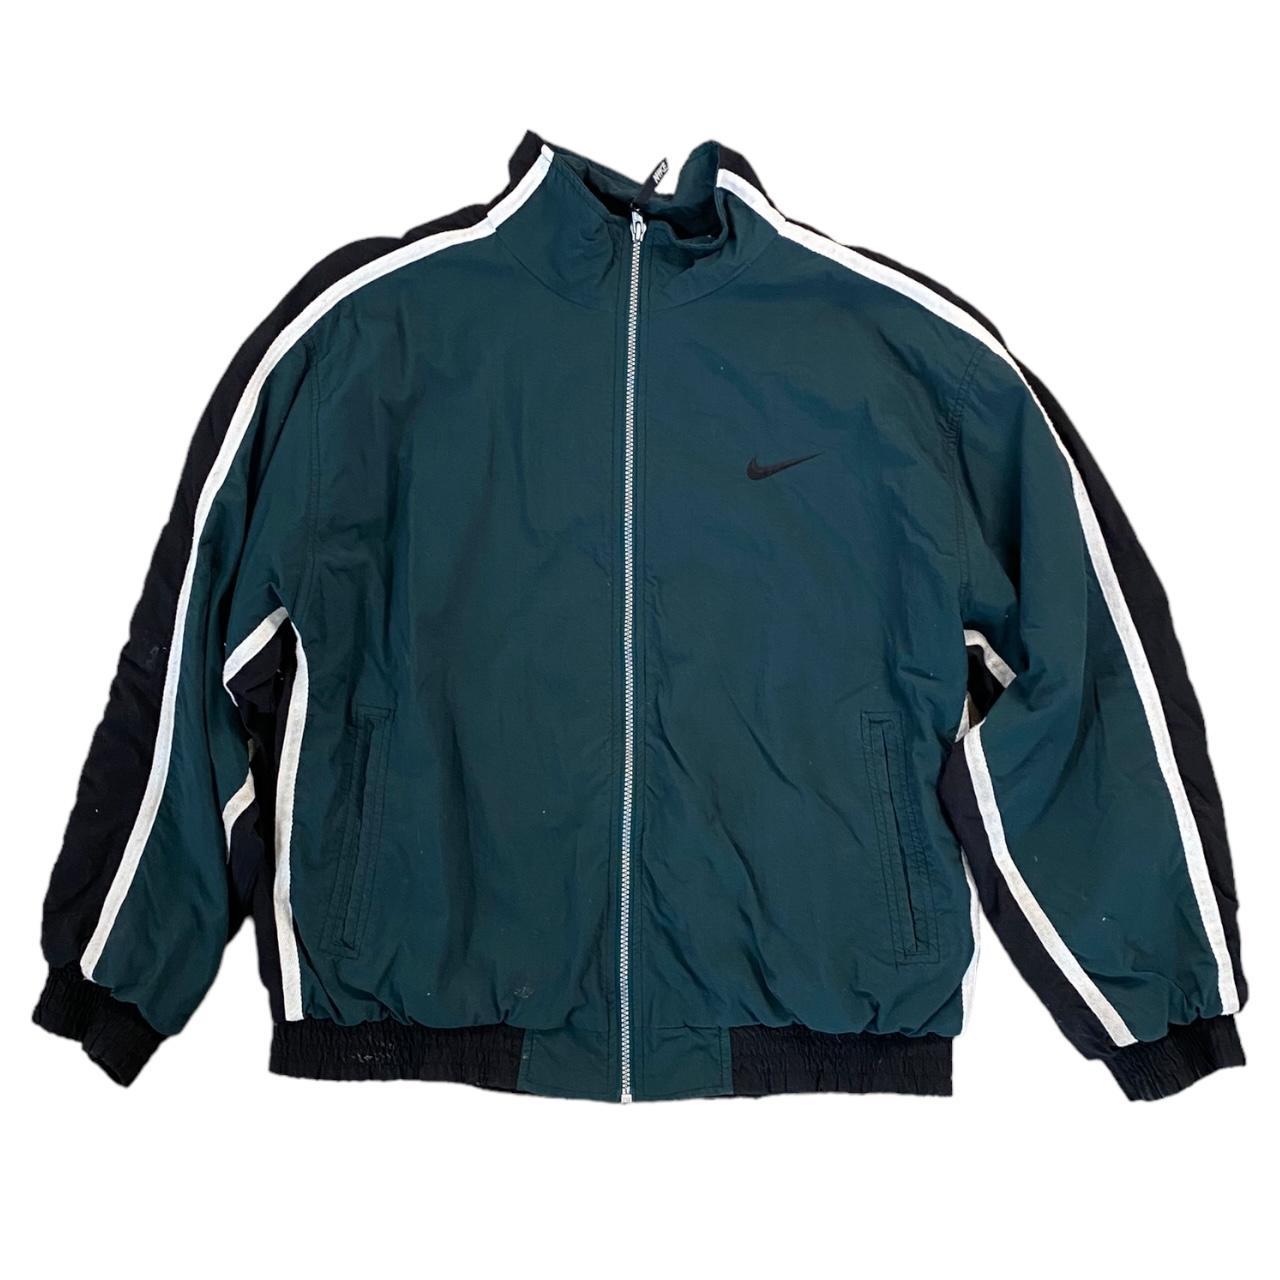 90s green Nike zip up windbreaker jacket 💚 • size... - Depop